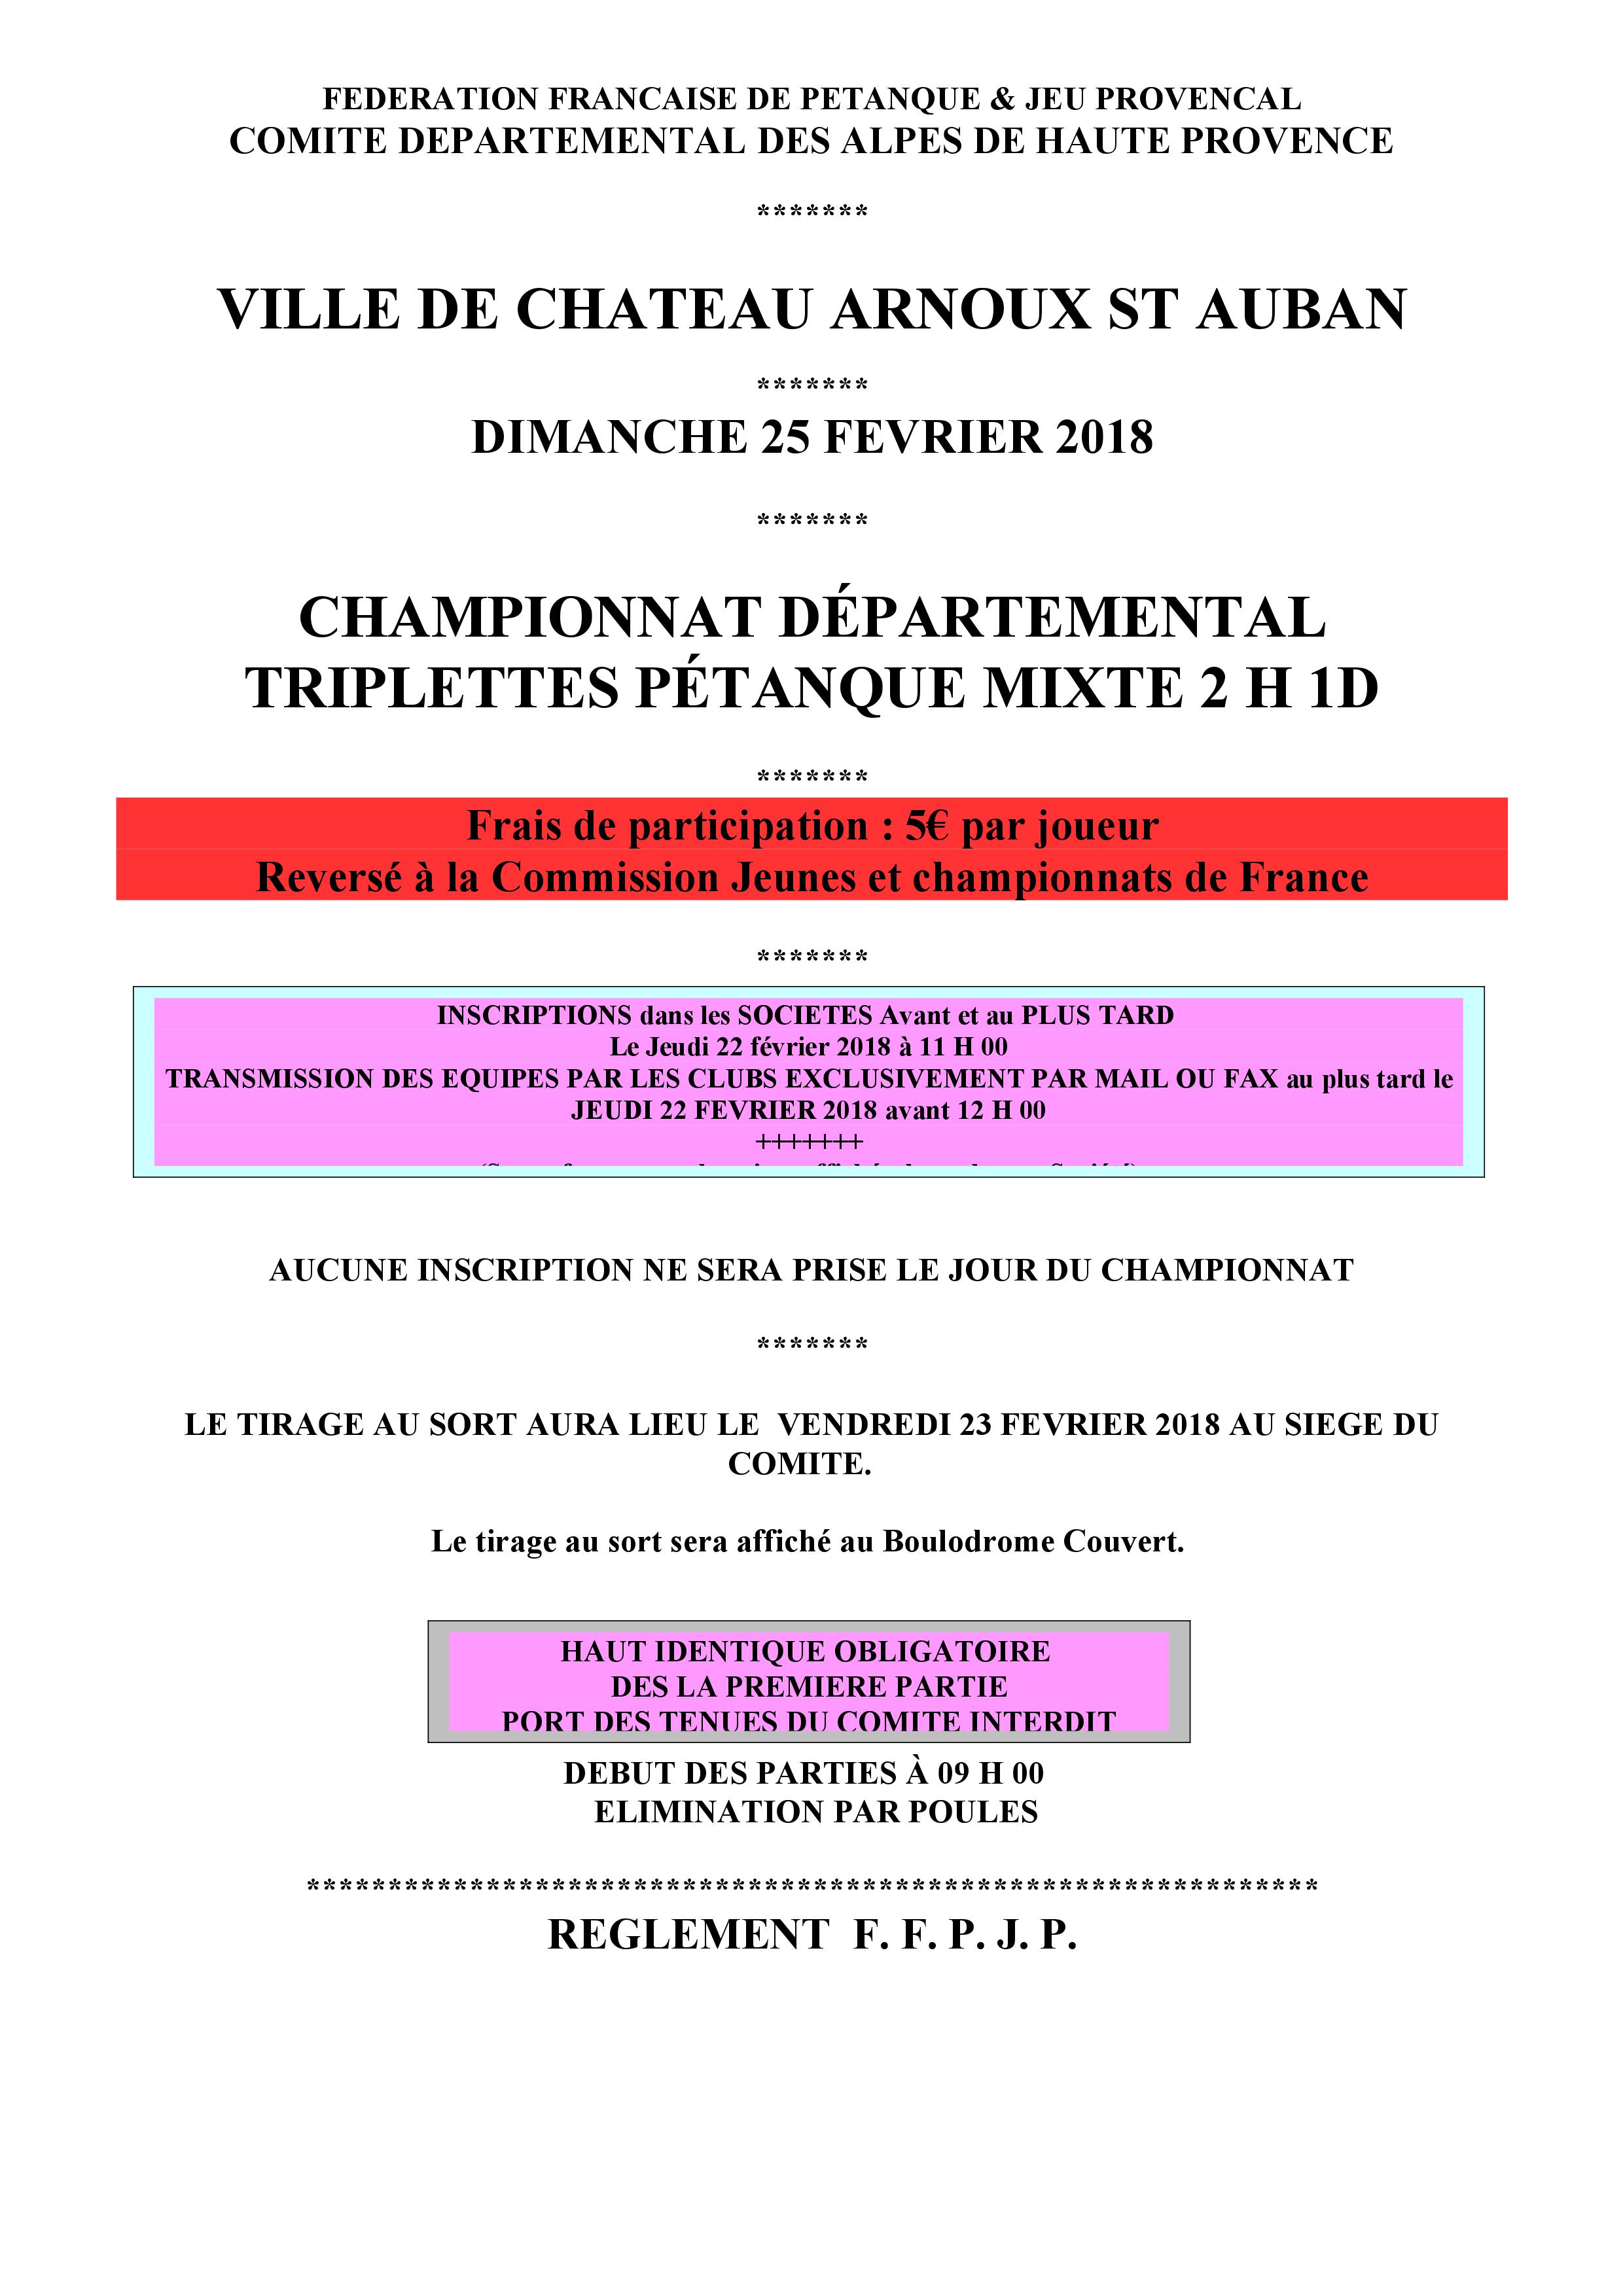 Championnat départemental triplette mixte - Actualité petanque generation